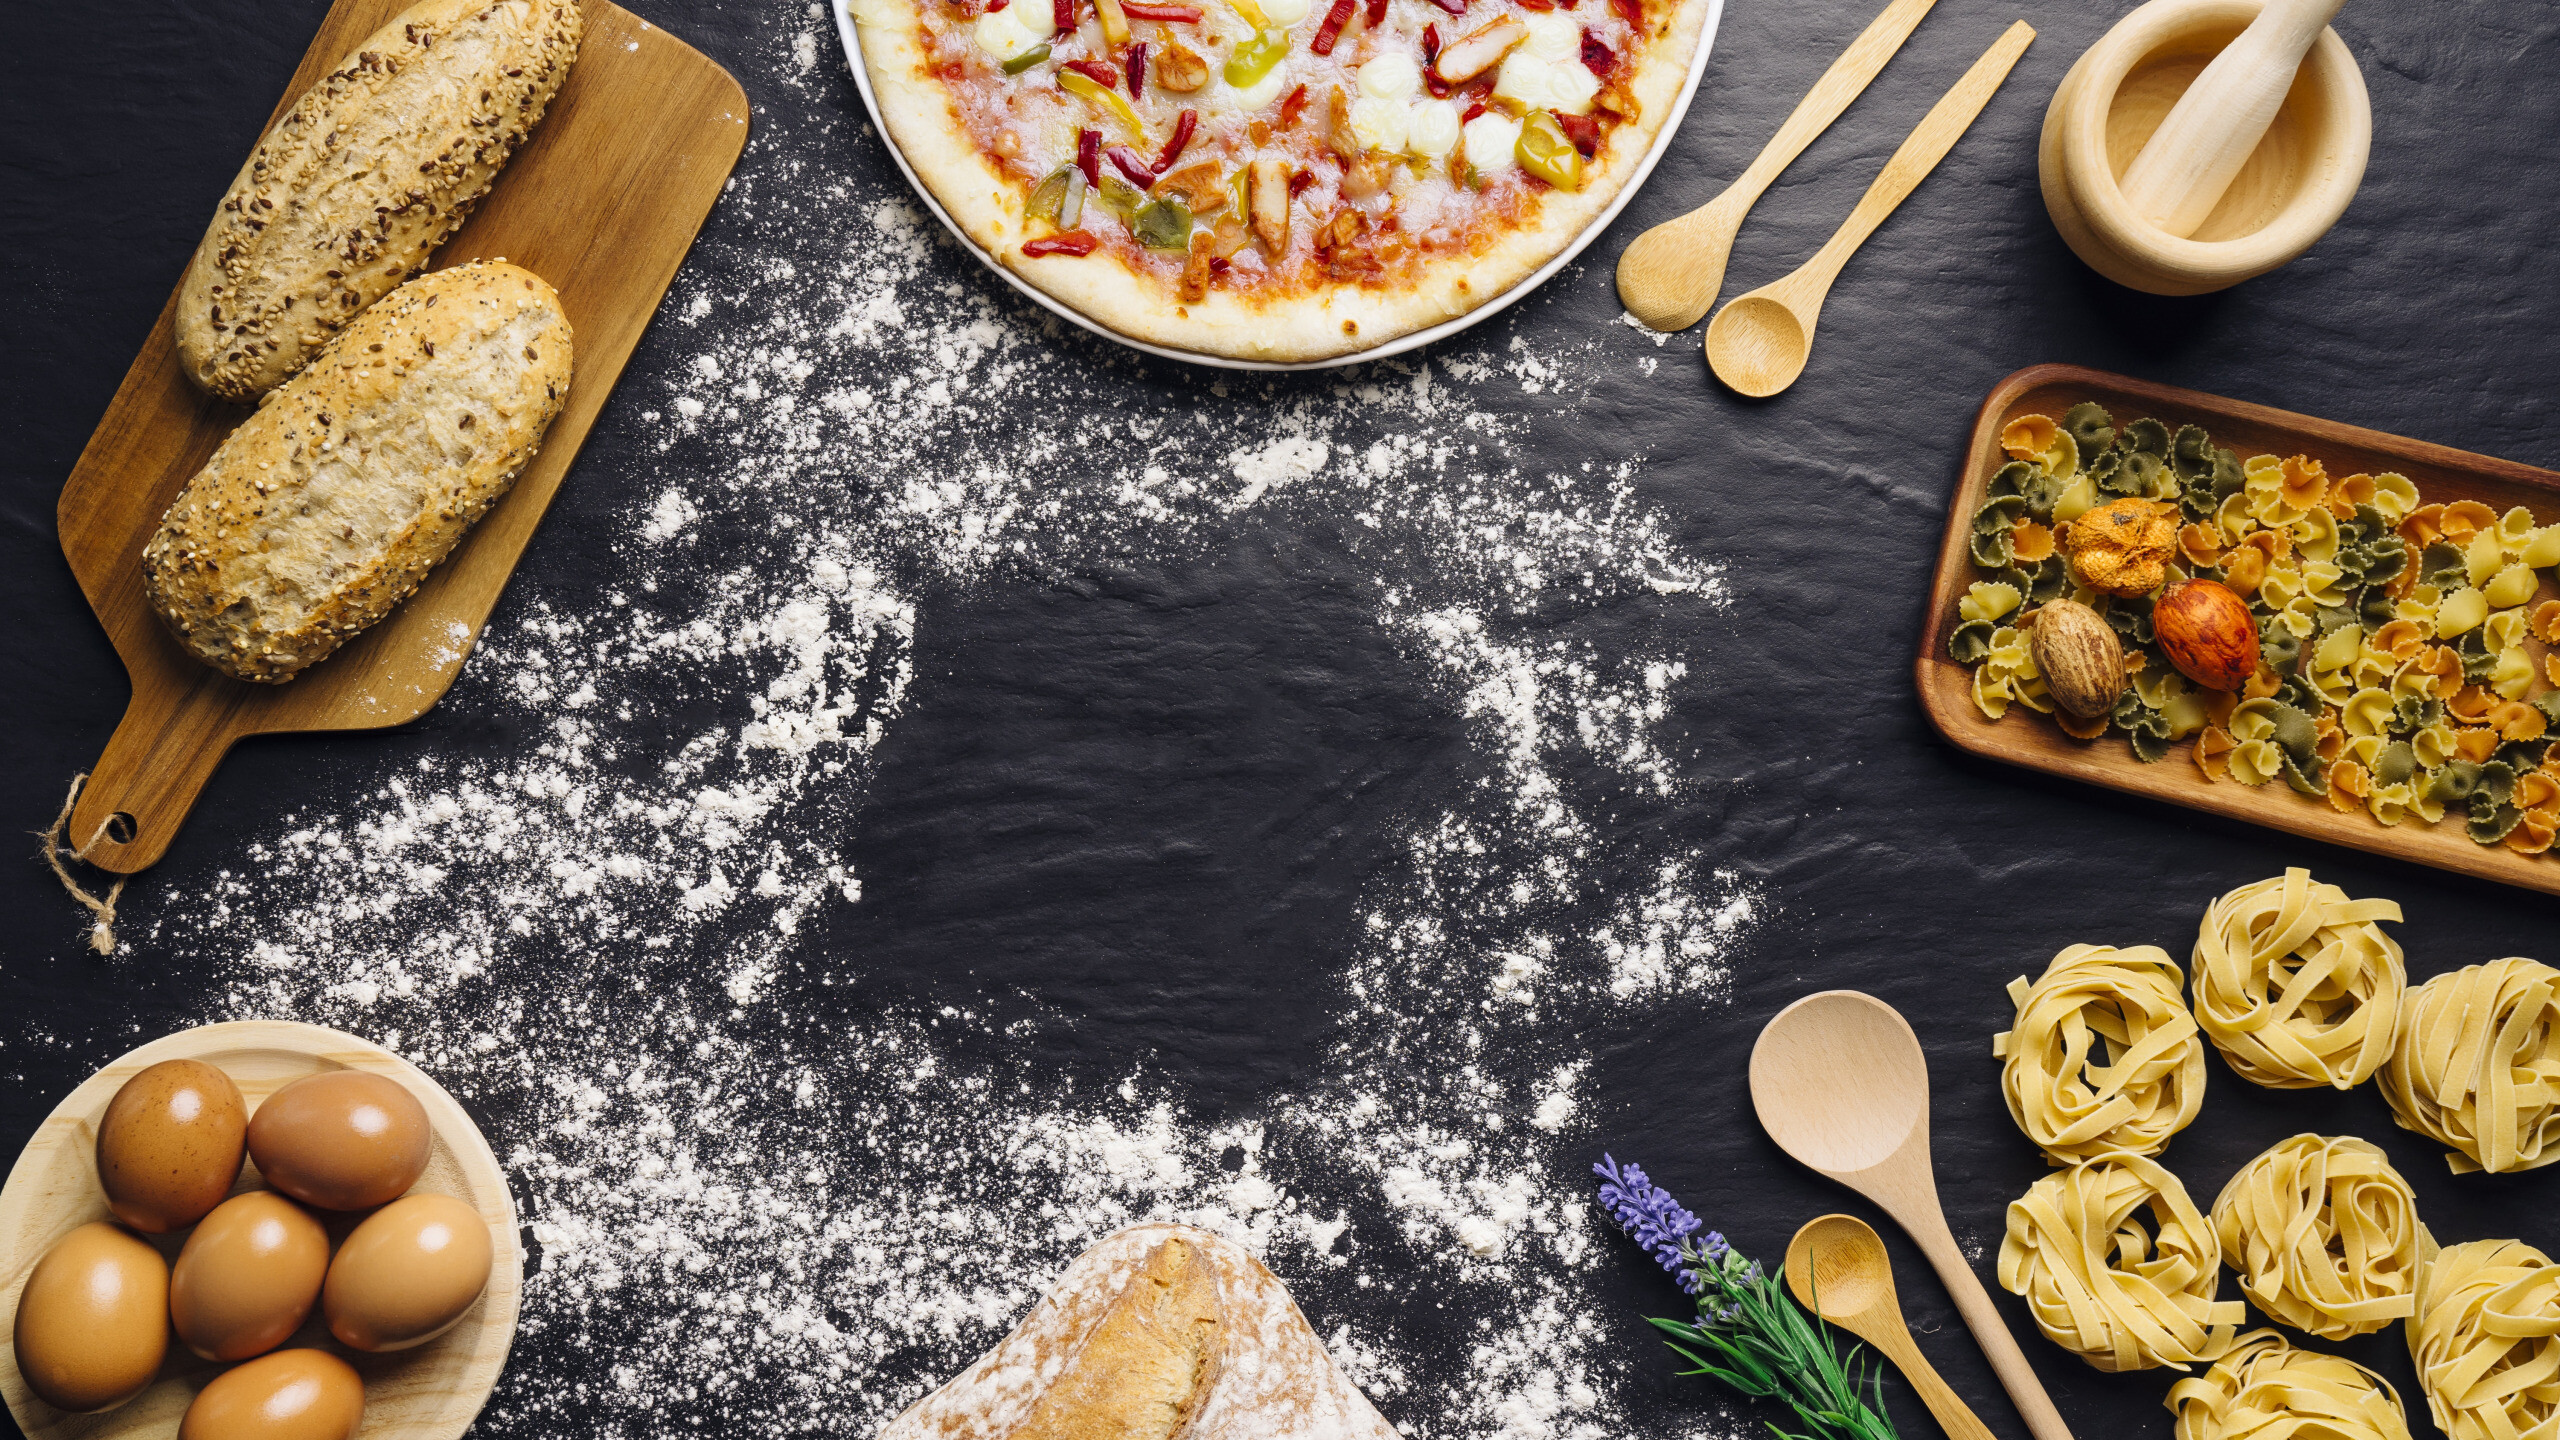 Pizza: Italian cuisine, Baked dish, Flatbread. 2560x1440 HD Wallpaper.